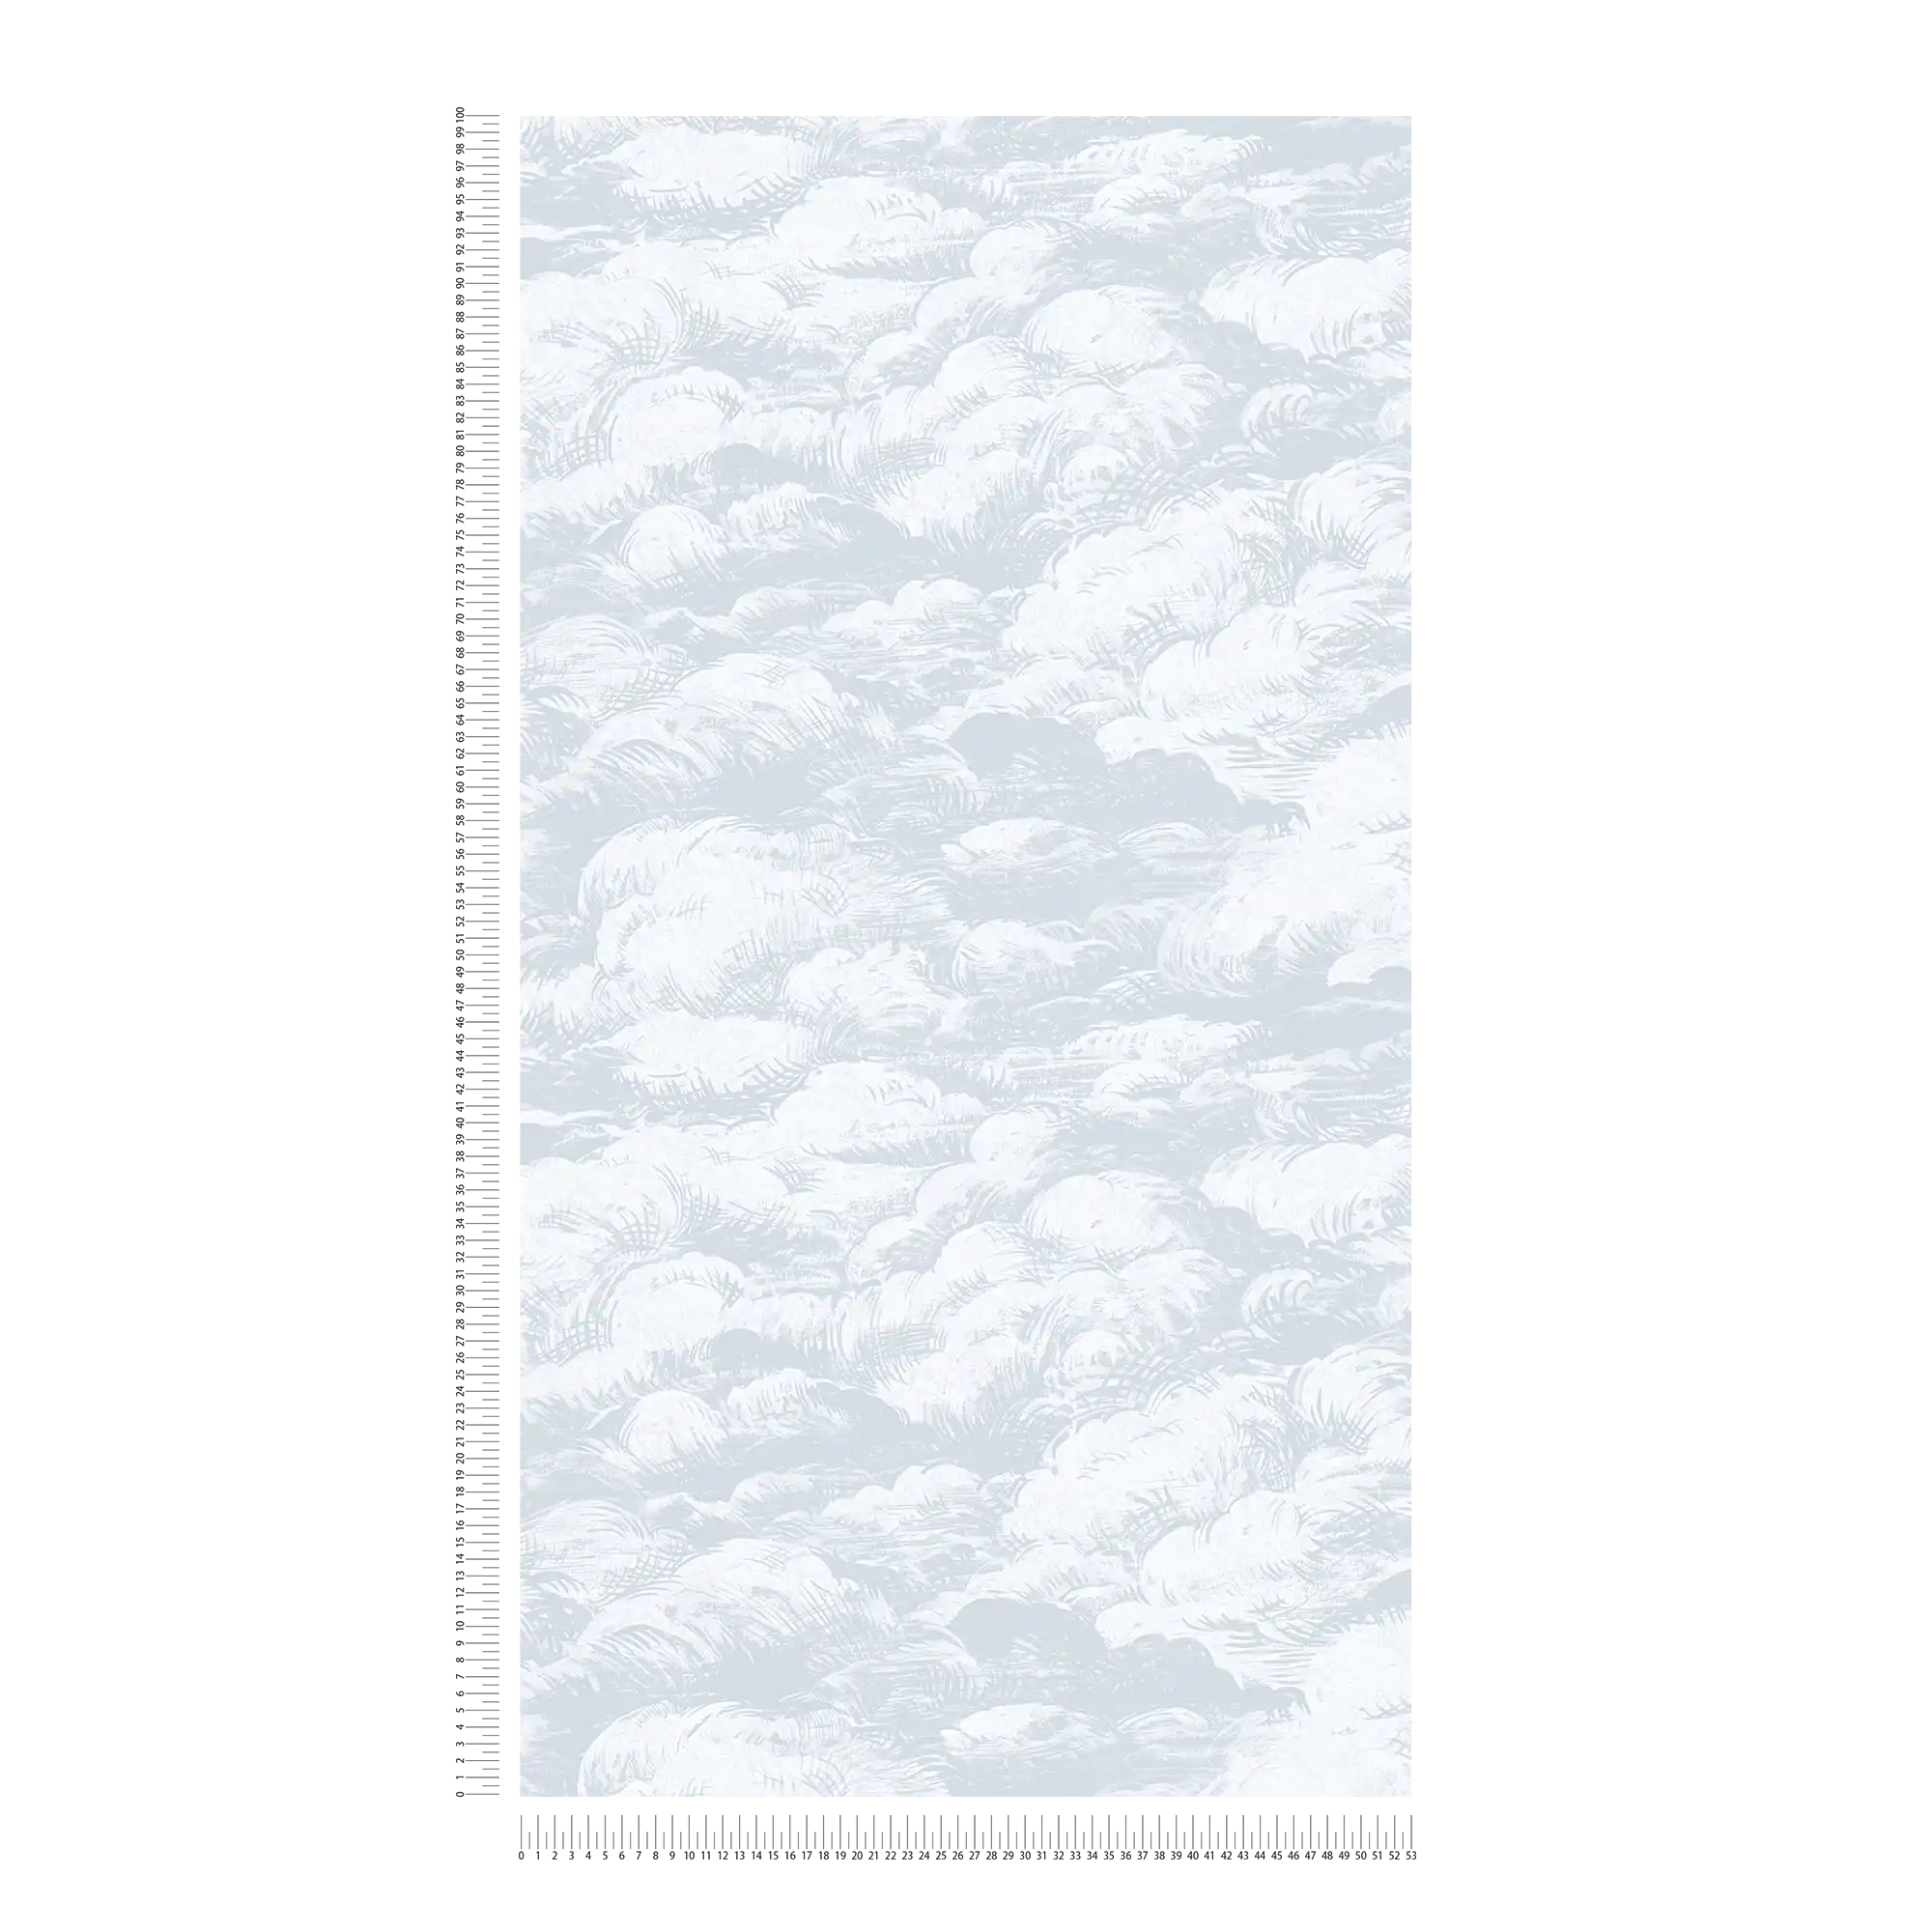             Carta da parati in tessuto non tessuto grigio chiaro con motivo di nuvole in stile vintage - grigio, bianco
        